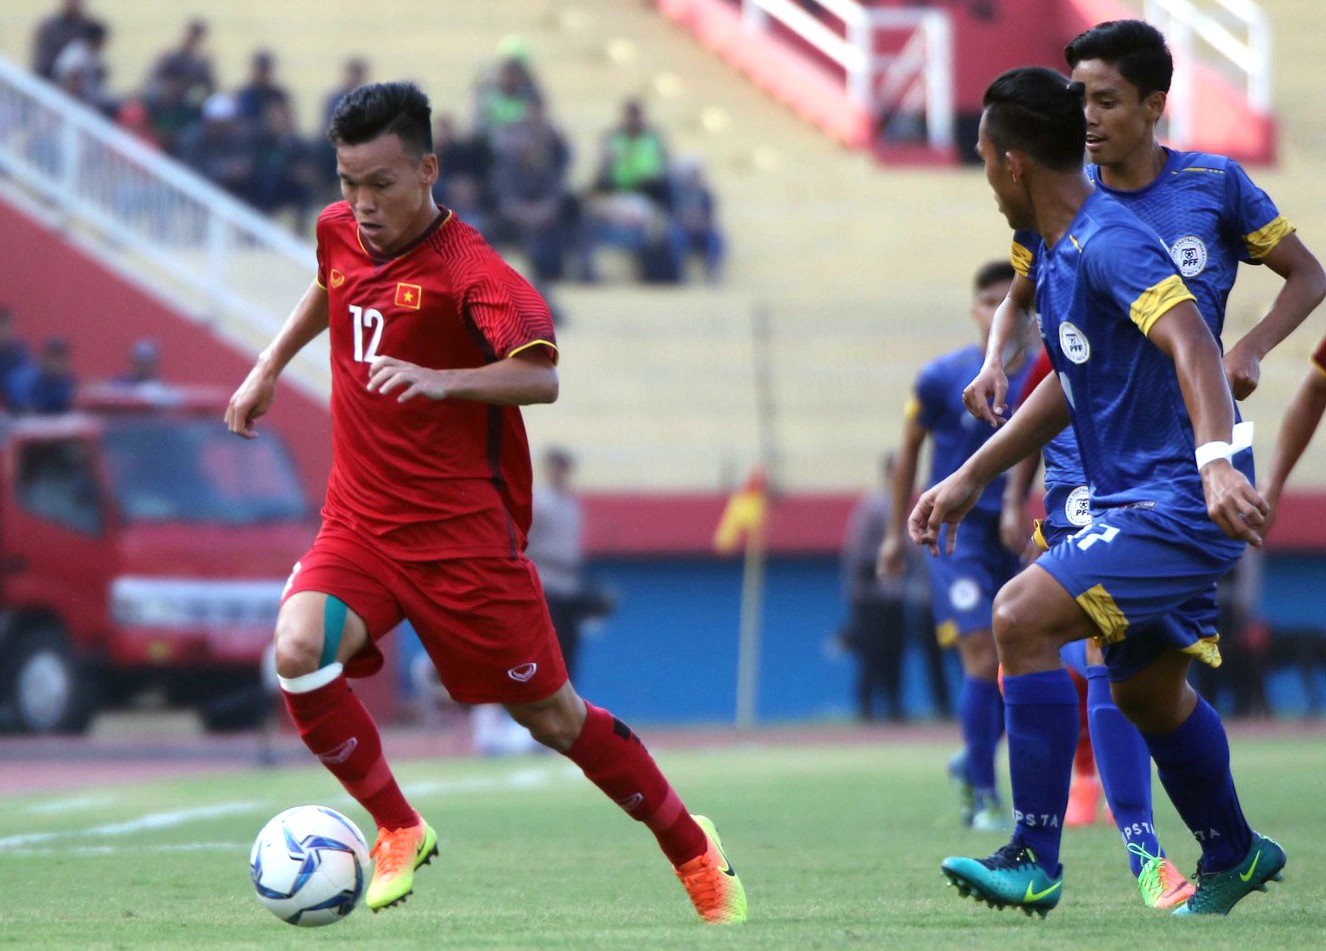 Thủ môn xuất sắc đẩy penalty, U19 Việt Nam vượt Thái Lan ở bảng xếp hạng AFF U19  - Ảnh 2.